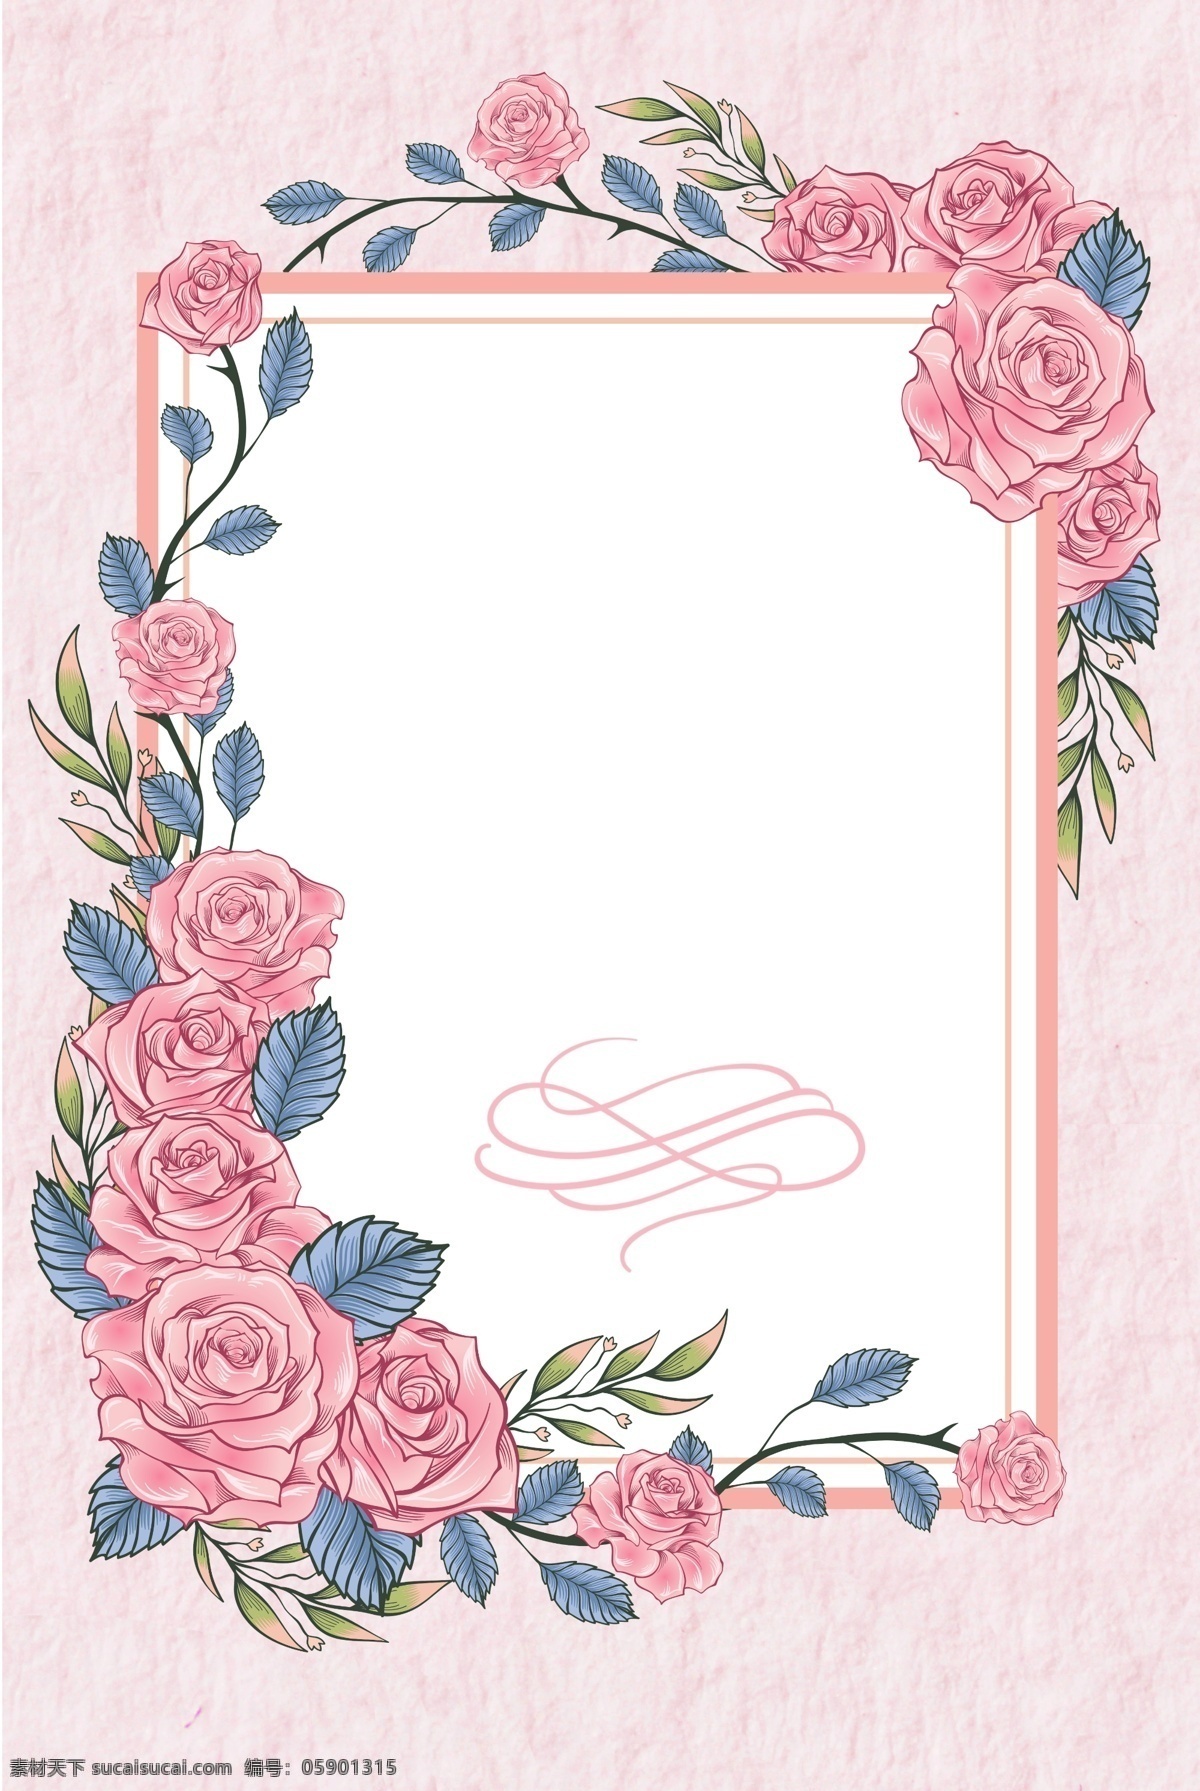 粉色 花卉 边框 女神 节 海报 背景 温馨 文艺 清新 卡通 质感 纹理 手绘 女神节